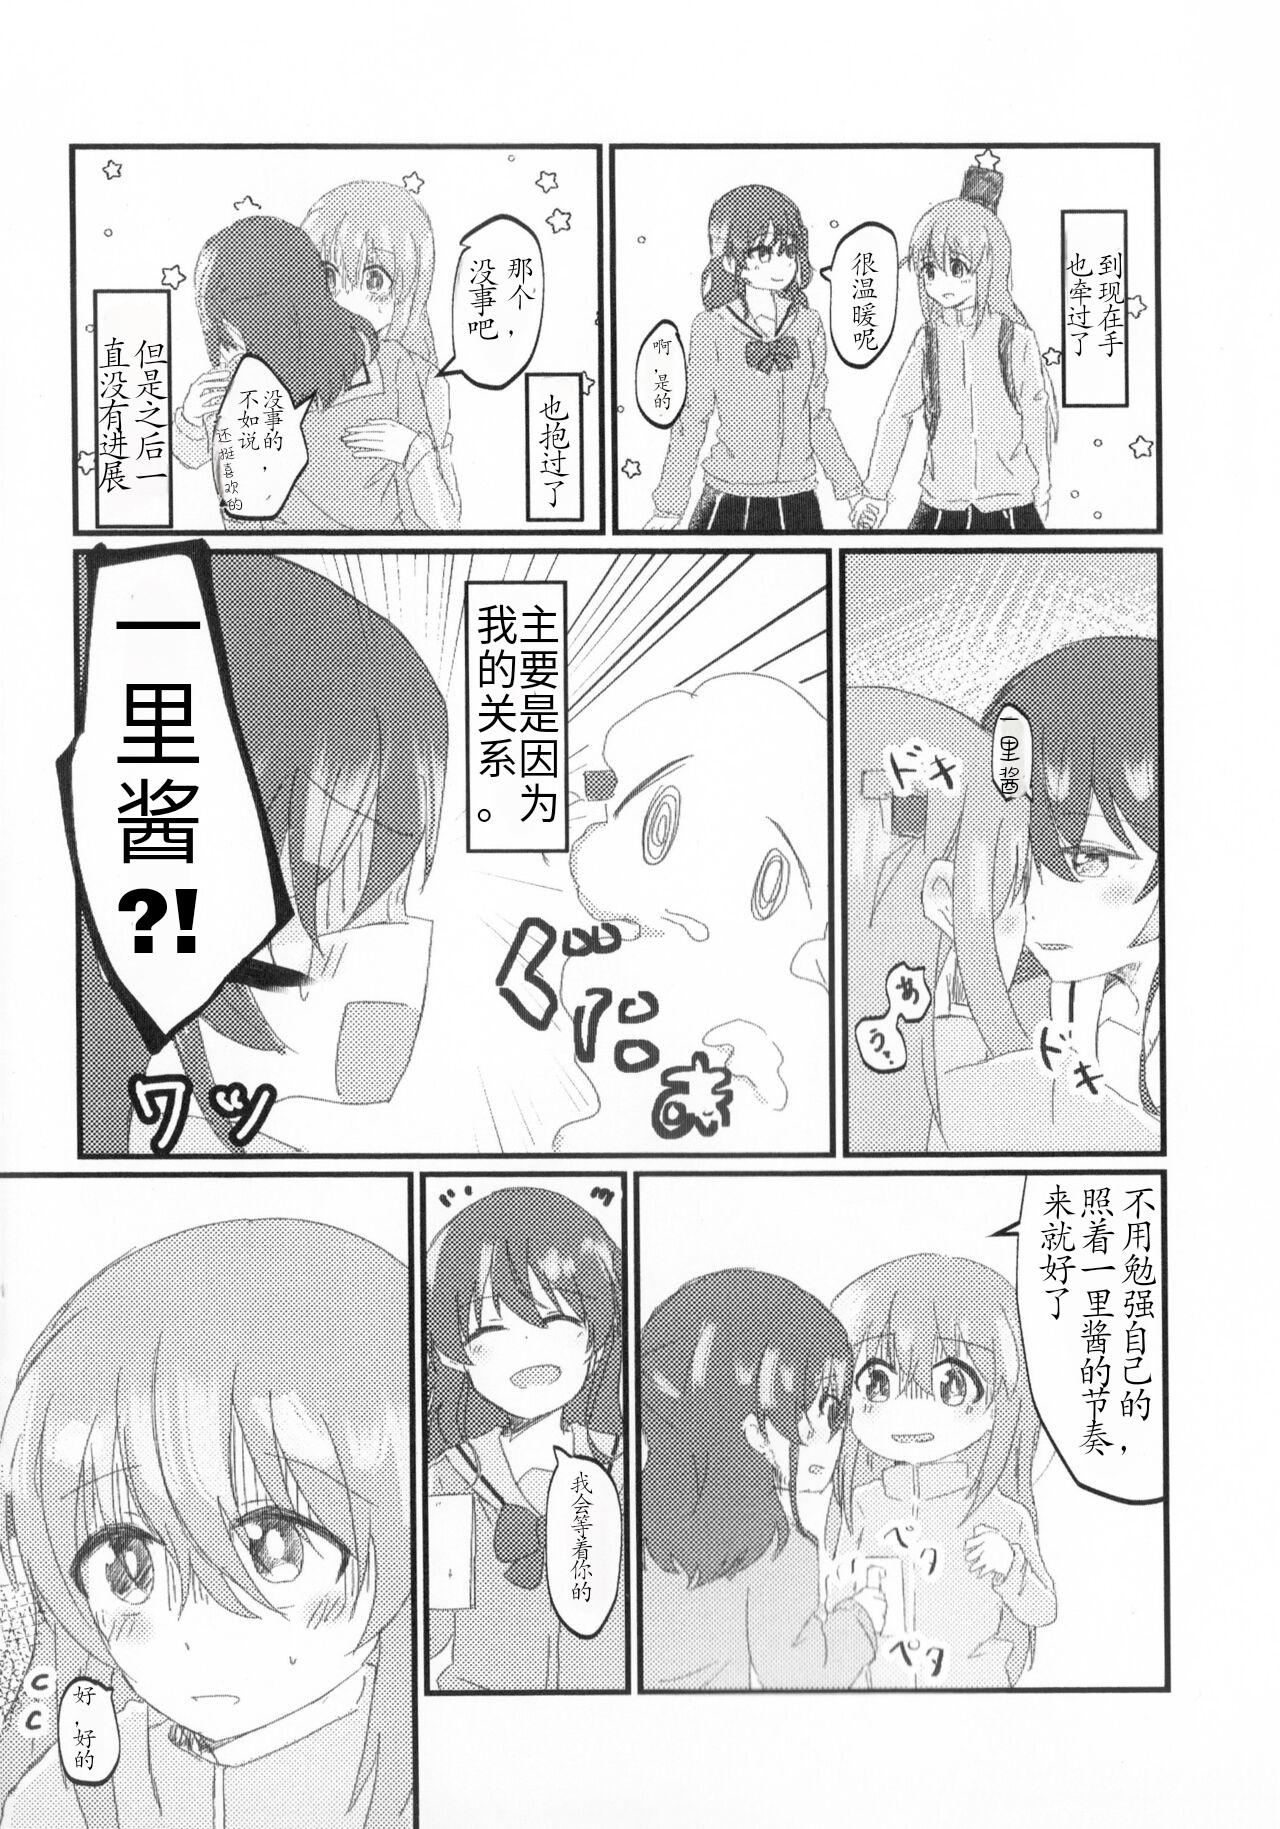 Blowing Gotou Hitori wa Kiss ga Shitai - Bocchi the rock Cavala - Page 3